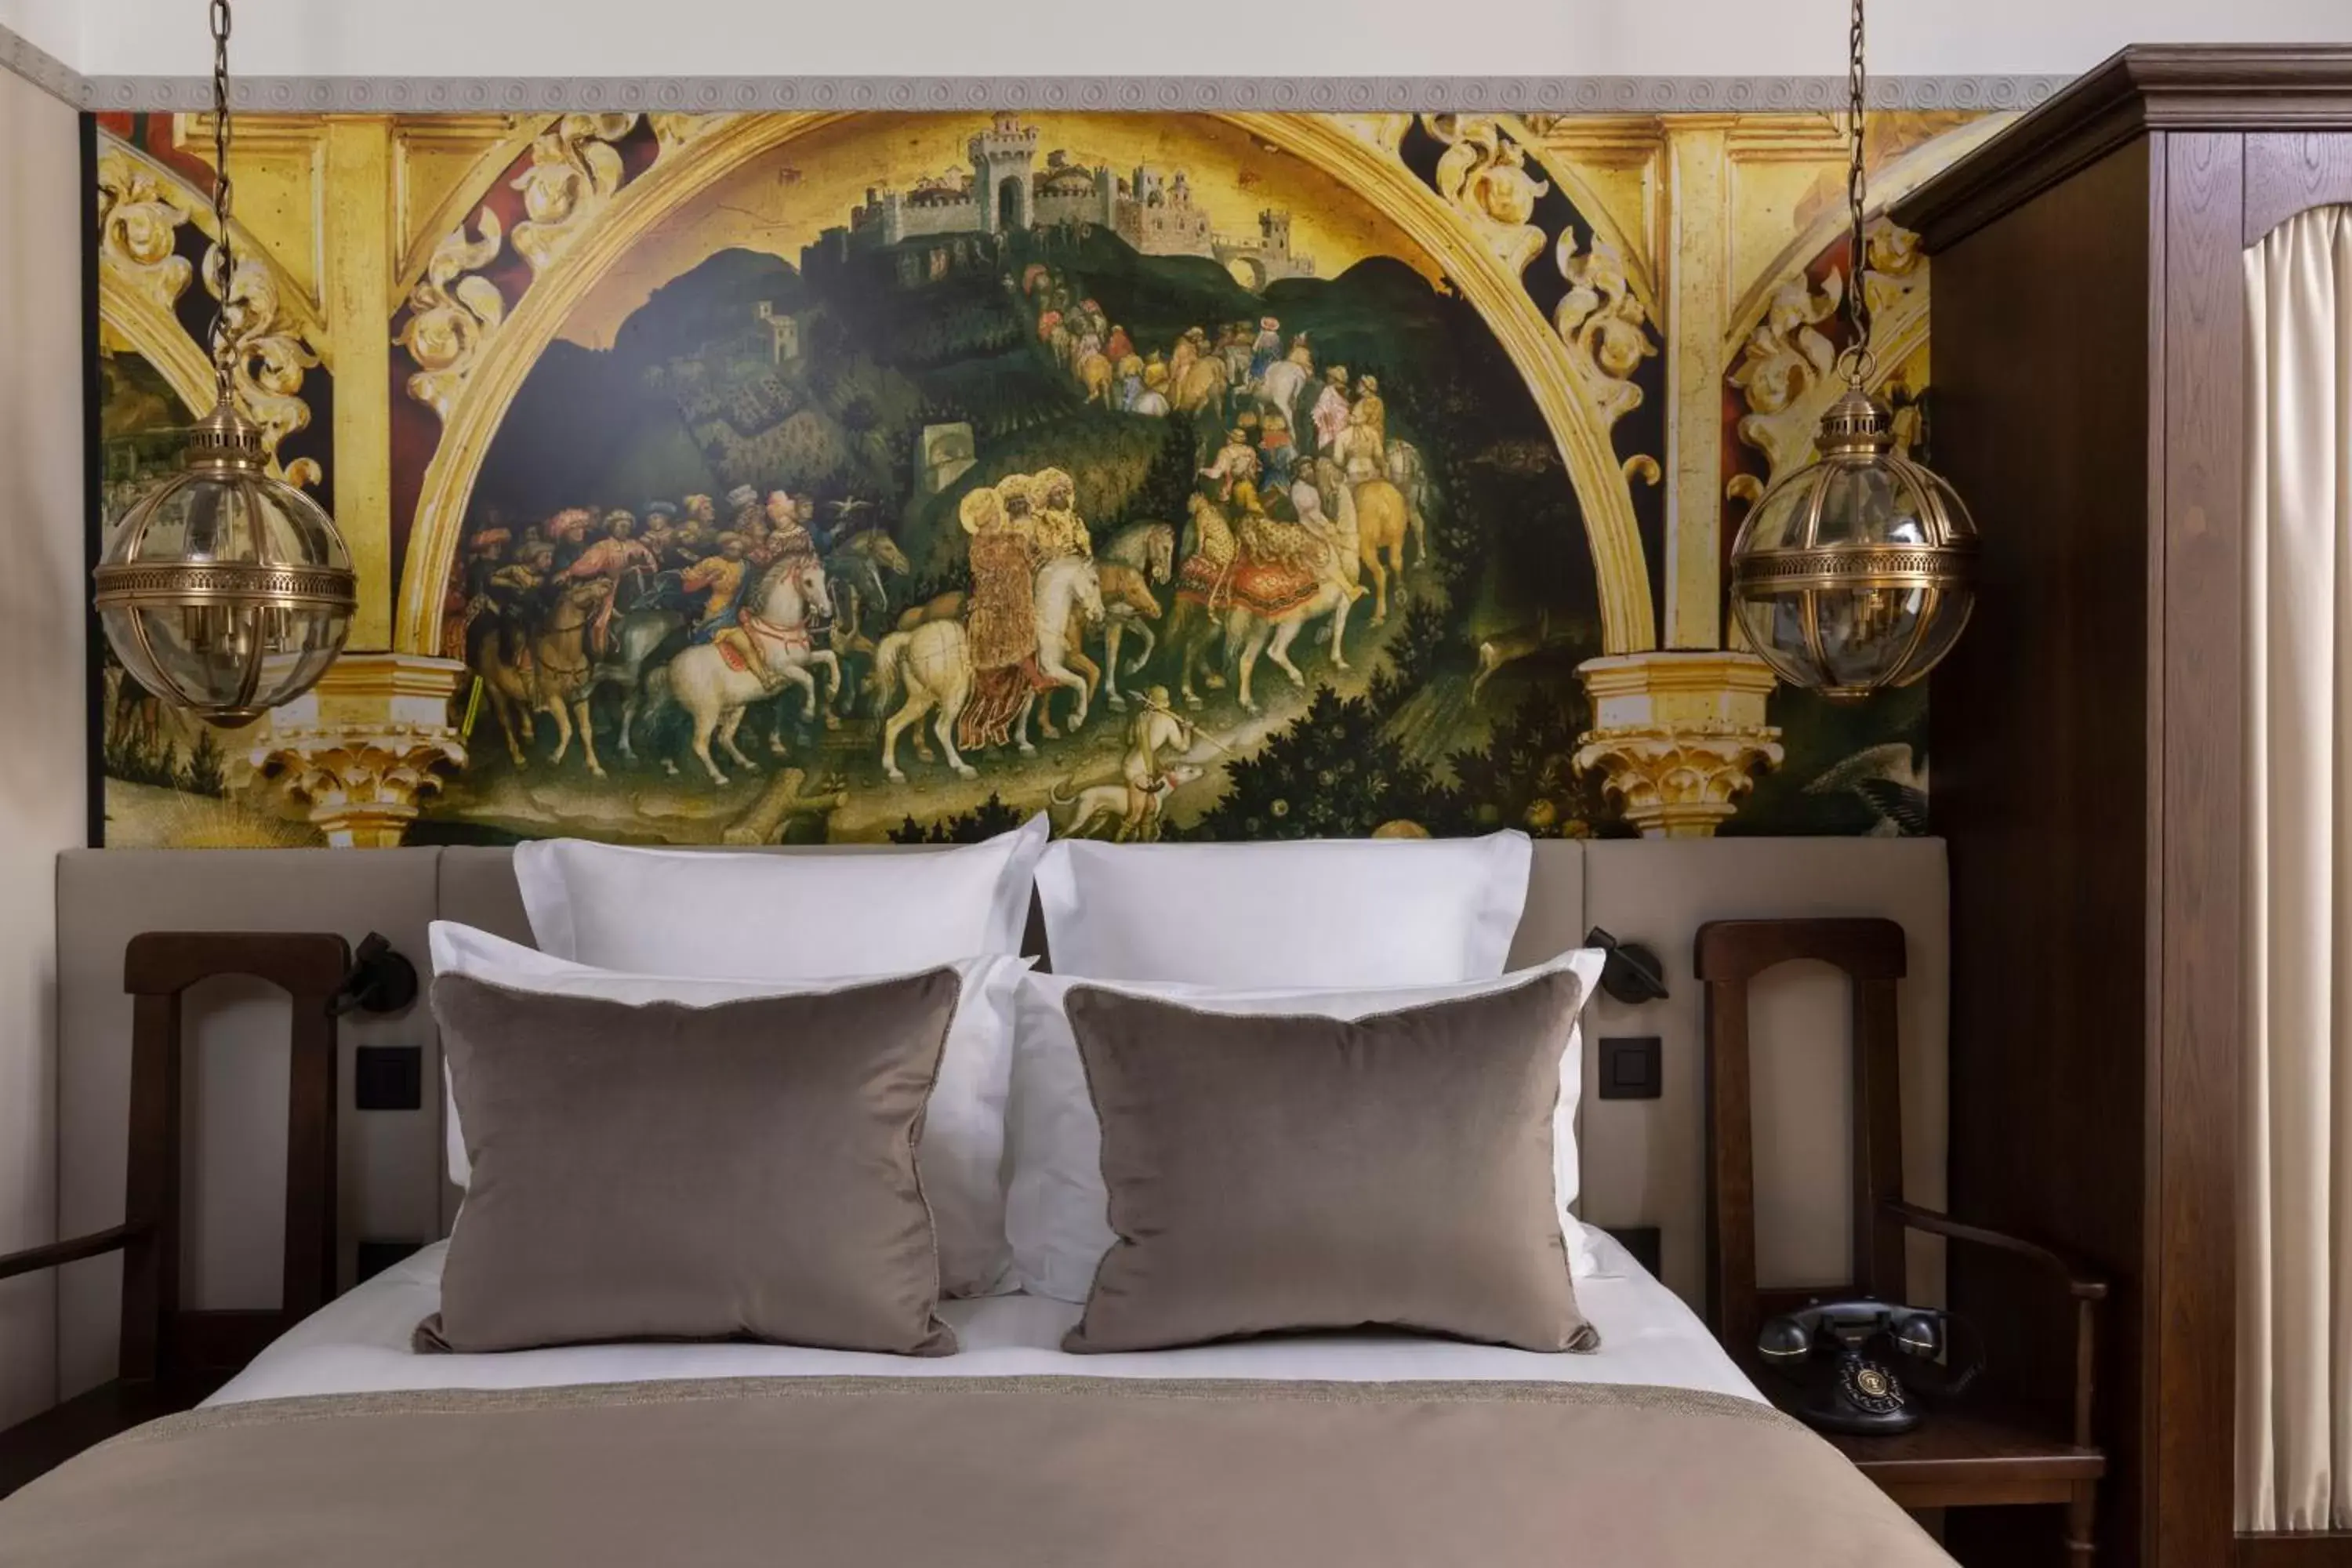 Bed in Hôtel Vinci Due & Spa